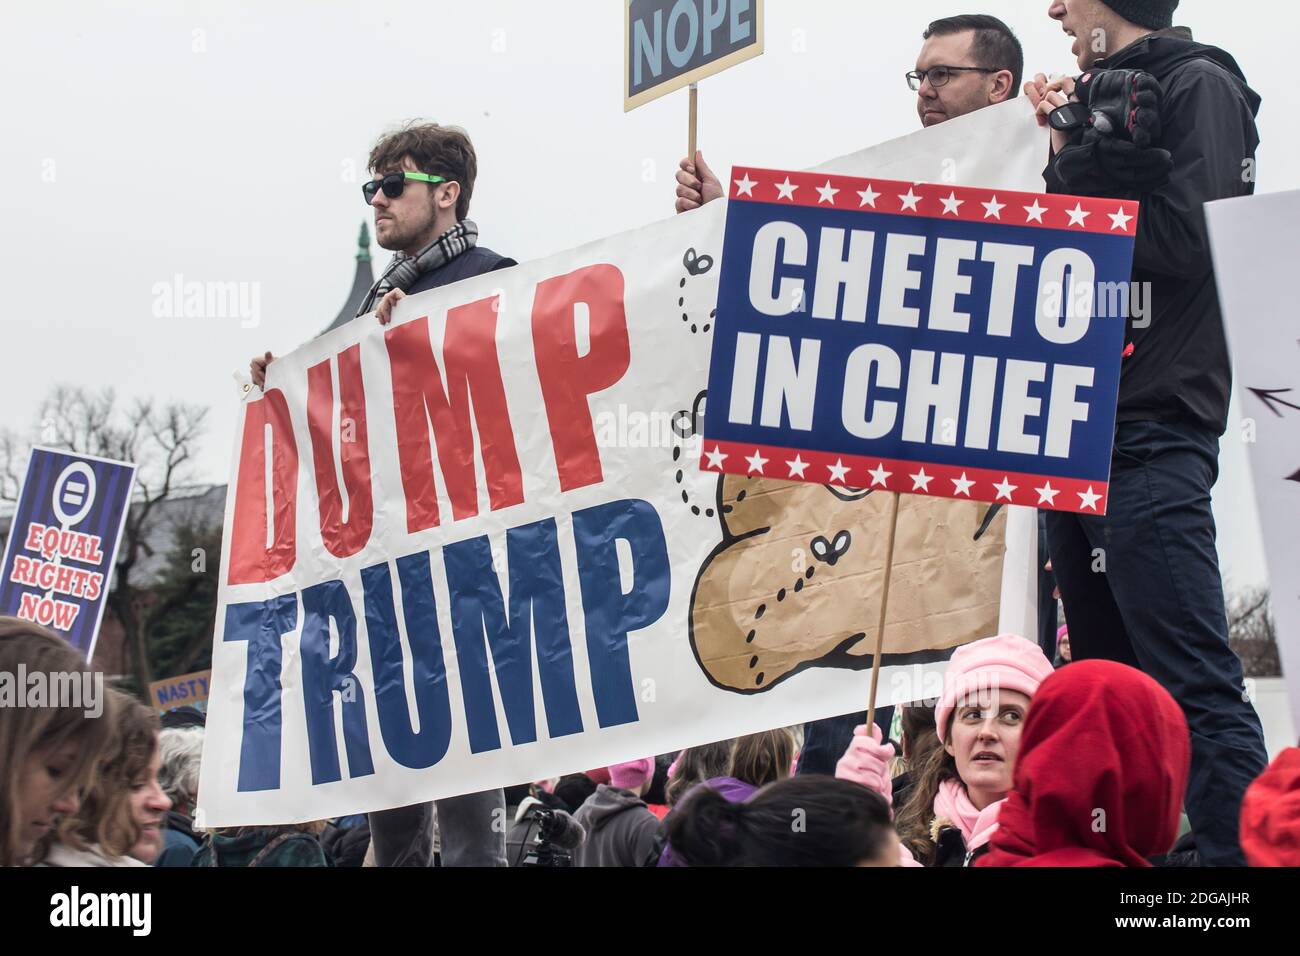 Washington D.C. - 21 de enero de 2017: La marcha de las mujeres en Washington. Los hombres tienen señales negativas de Trump. 'Trump' 'Cheeto en Jefe' Foto de stock